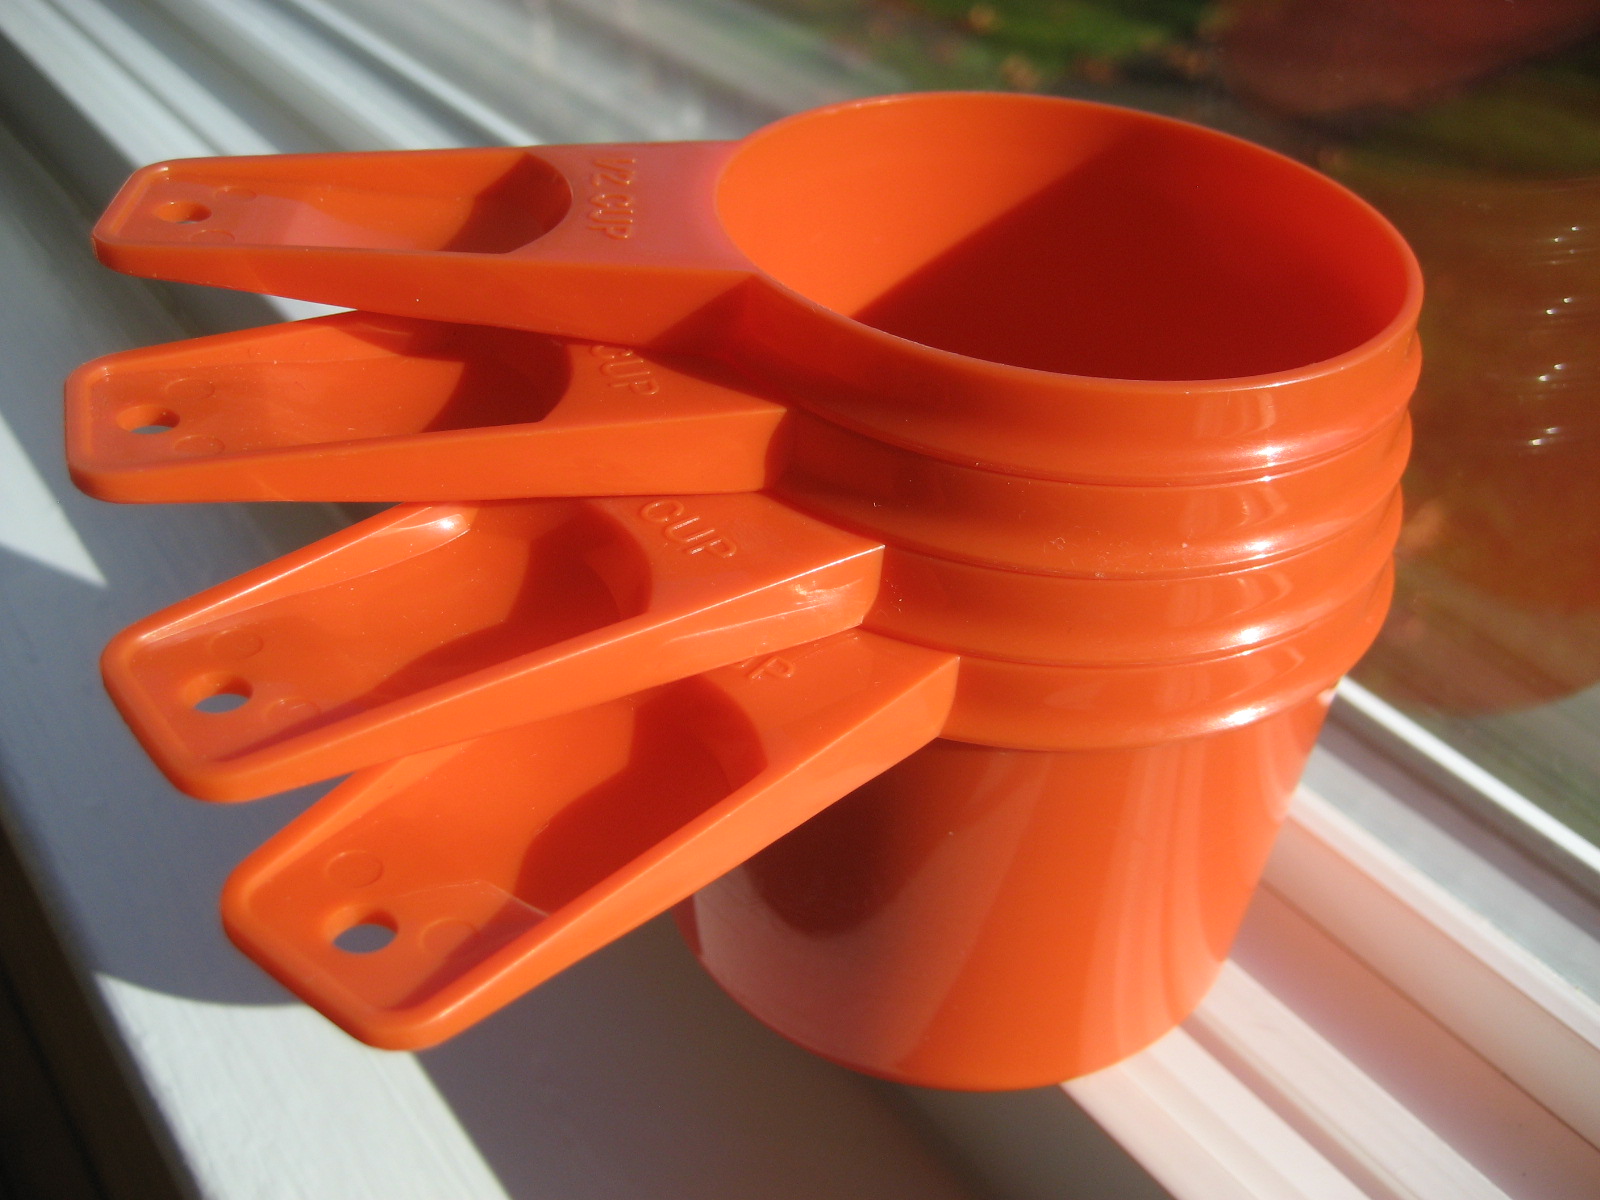 Vintage Tupperware Measuring Spoons, Orange Tupperware Complete